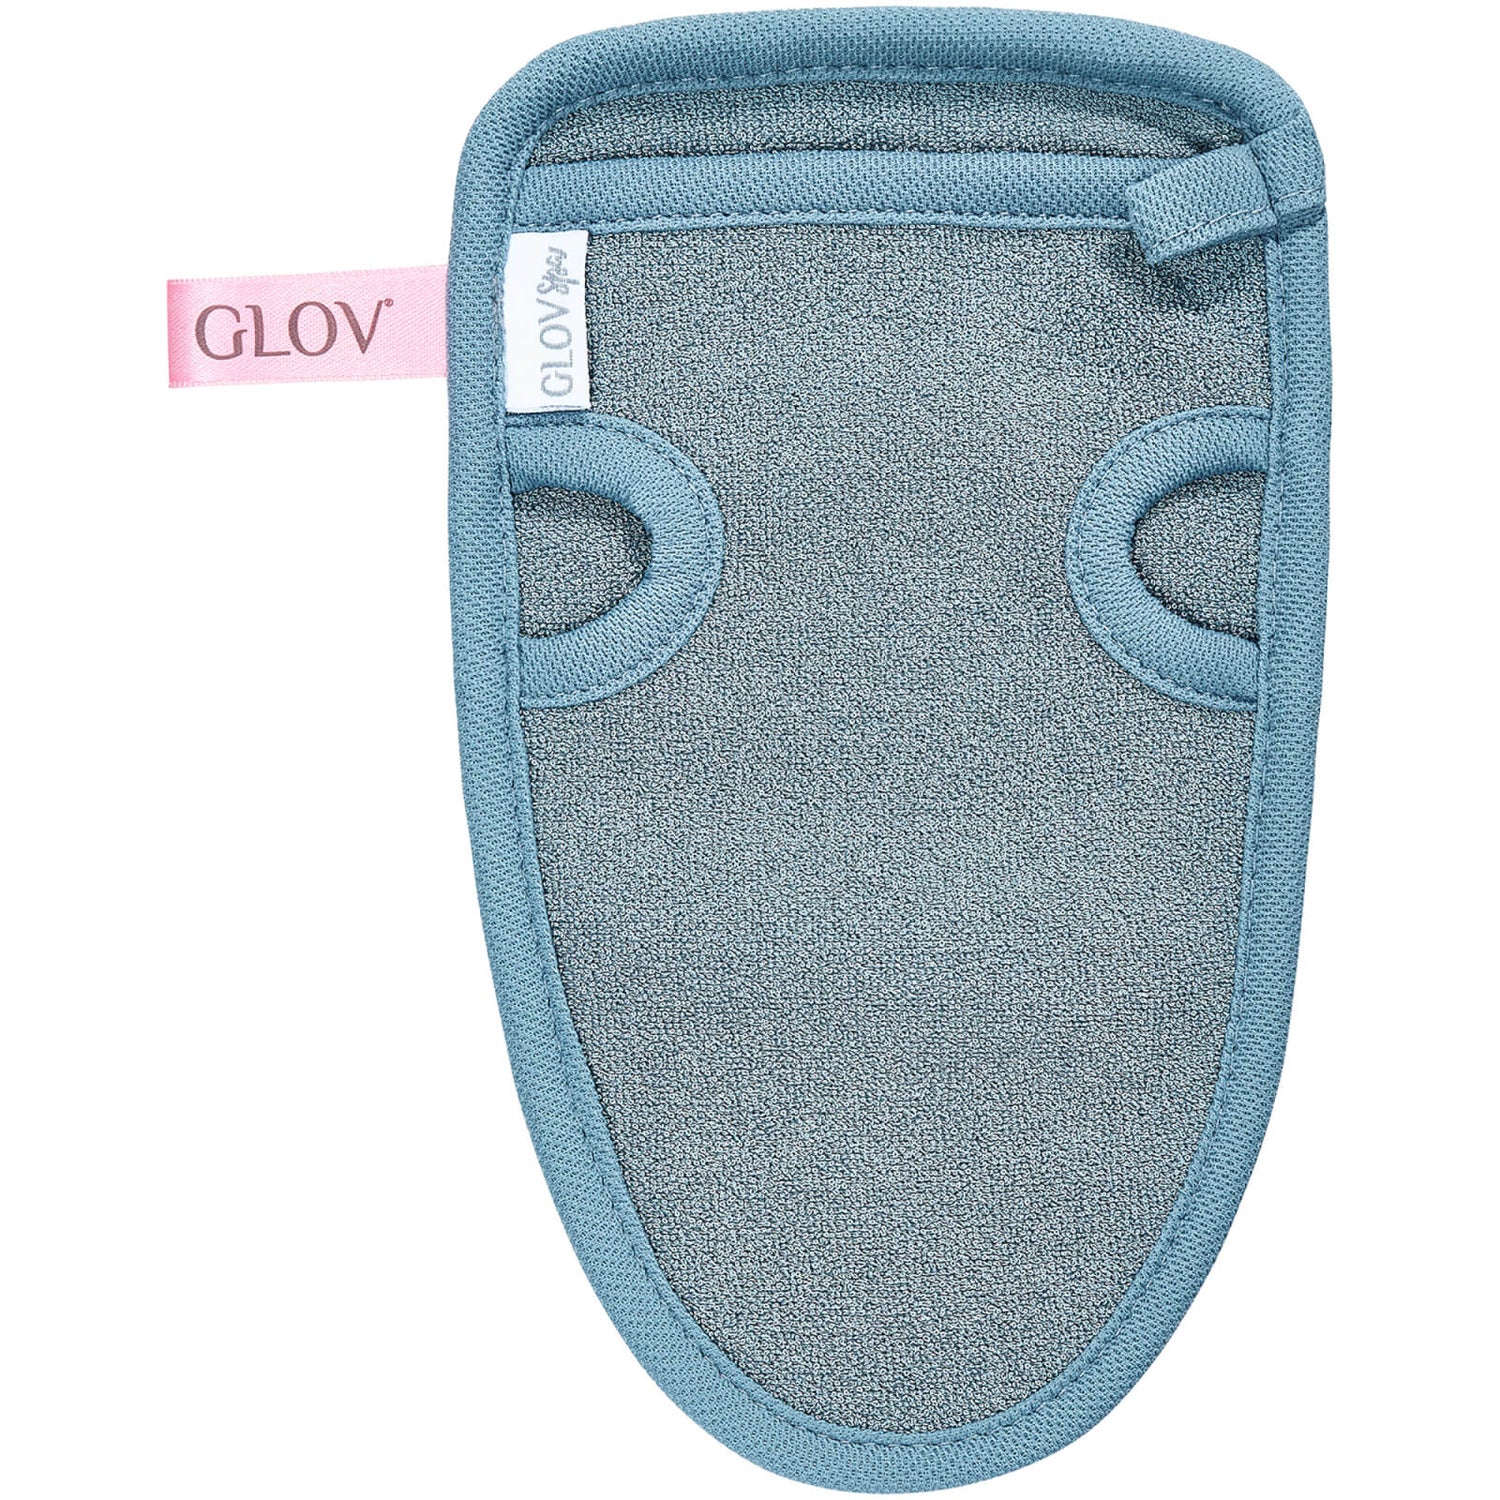 GLOV 舒缓肌肤去角质手套 | 灰色